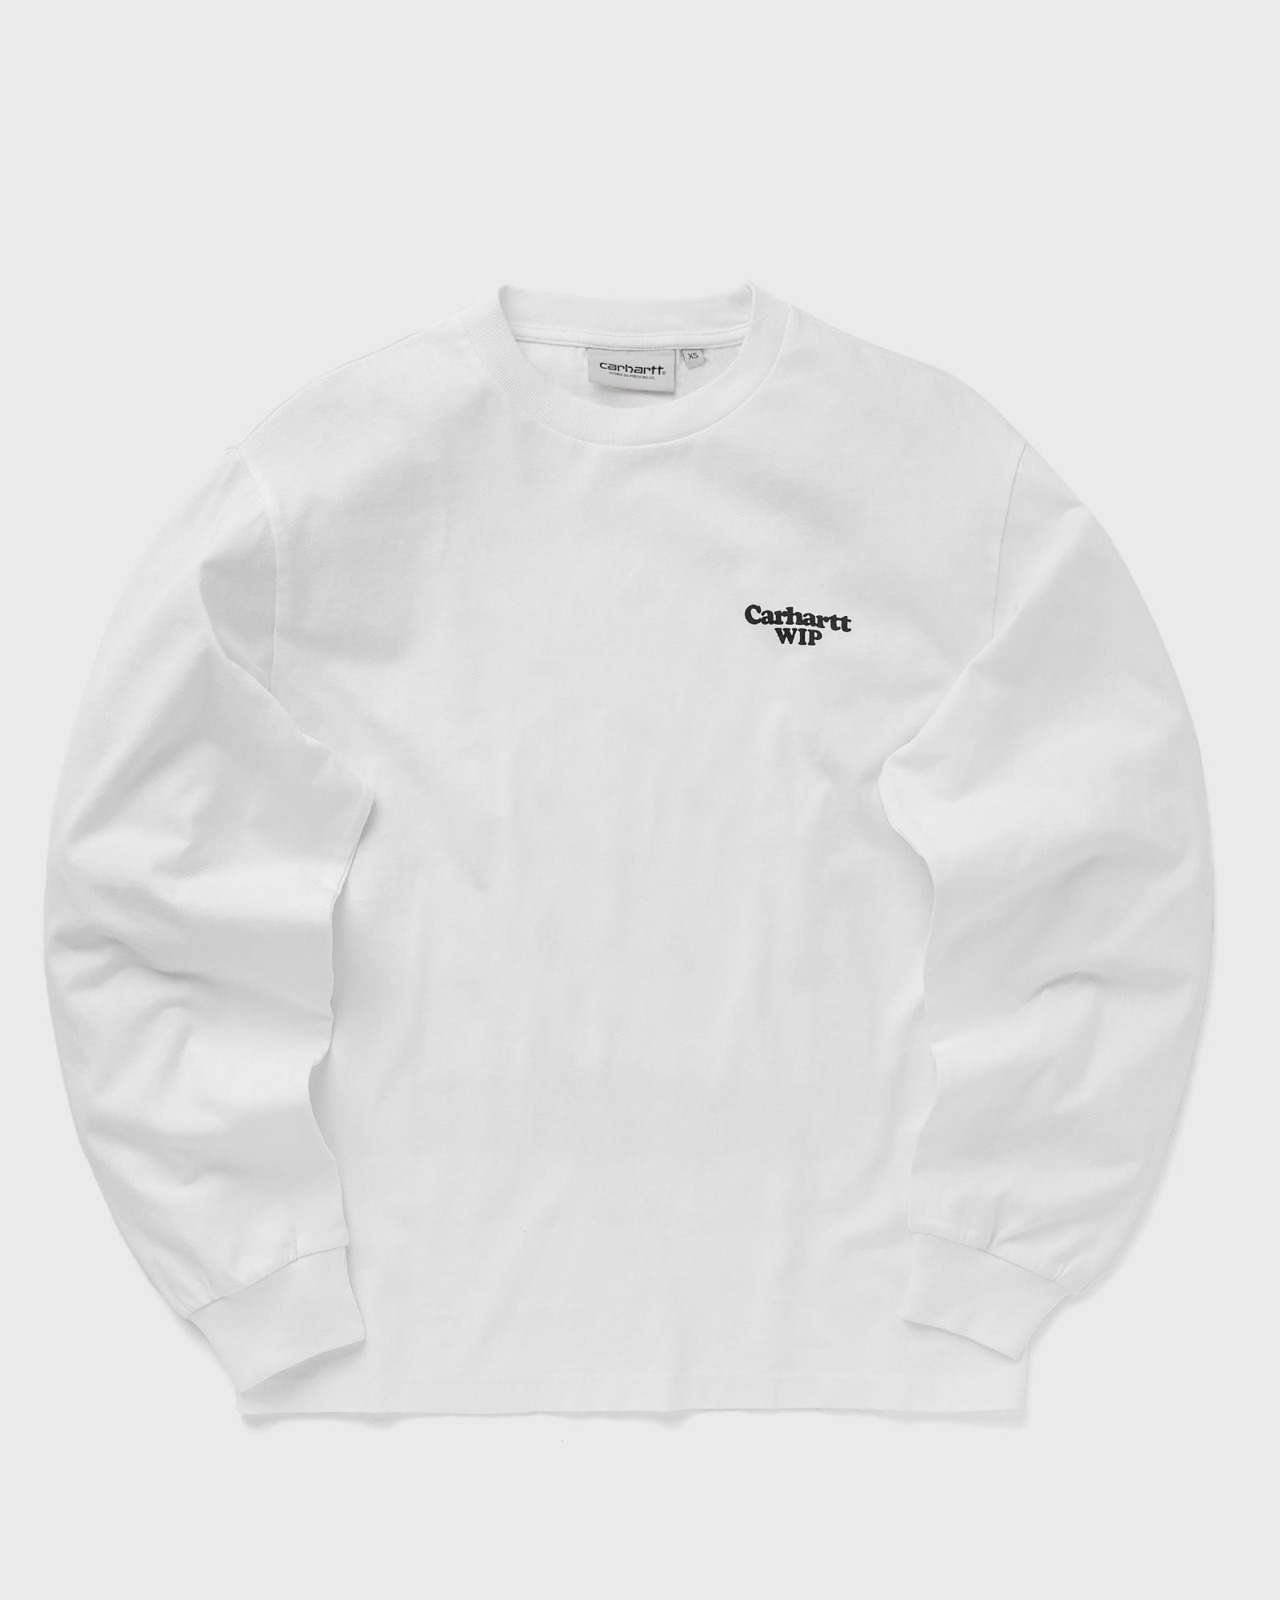 Carhartt - White T-Shirt Bstn Women GOOFASH